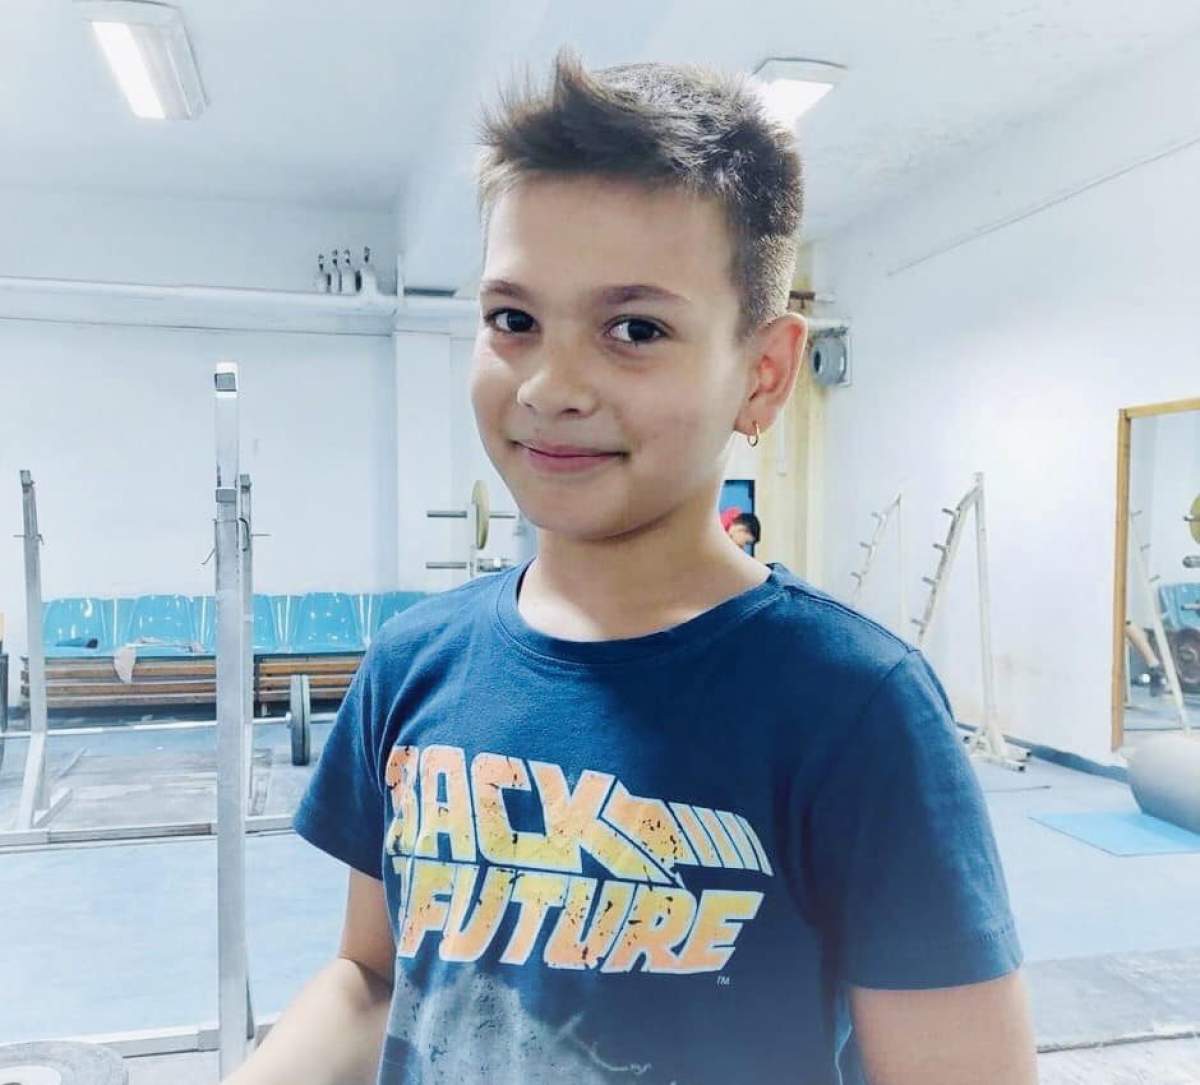 Thomas Nicholas Checedi, halterofilul mort la 9 ani, în sala de sport